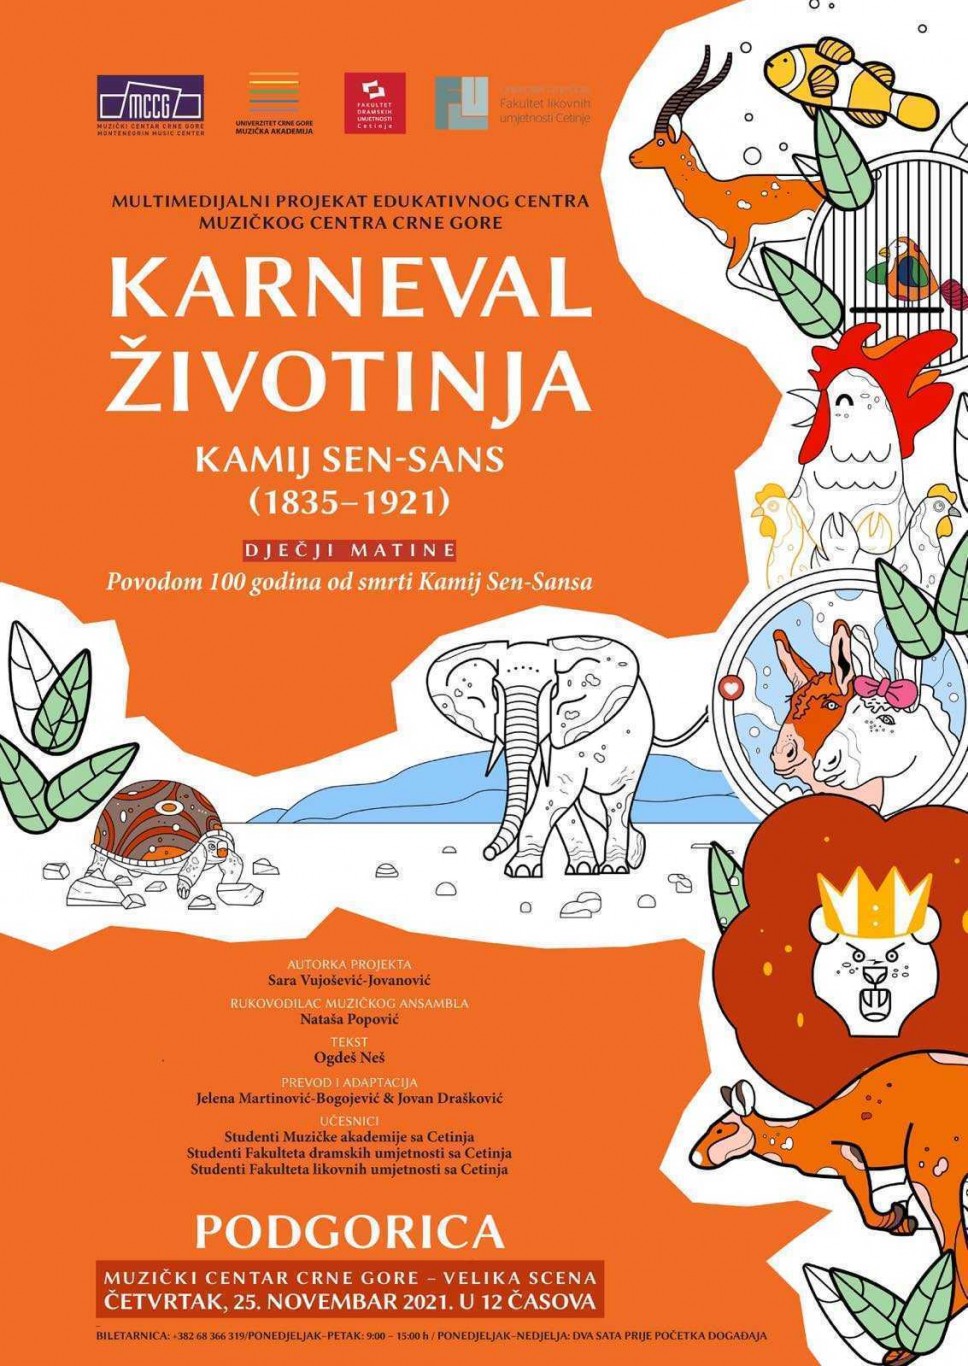 Dr Sara Vujošević, profesorica na predmetu Glas sa FDU - Cetinje autorka projekta Dječji matine "Karneval životinja" u Muzičkom centru Crne Gore